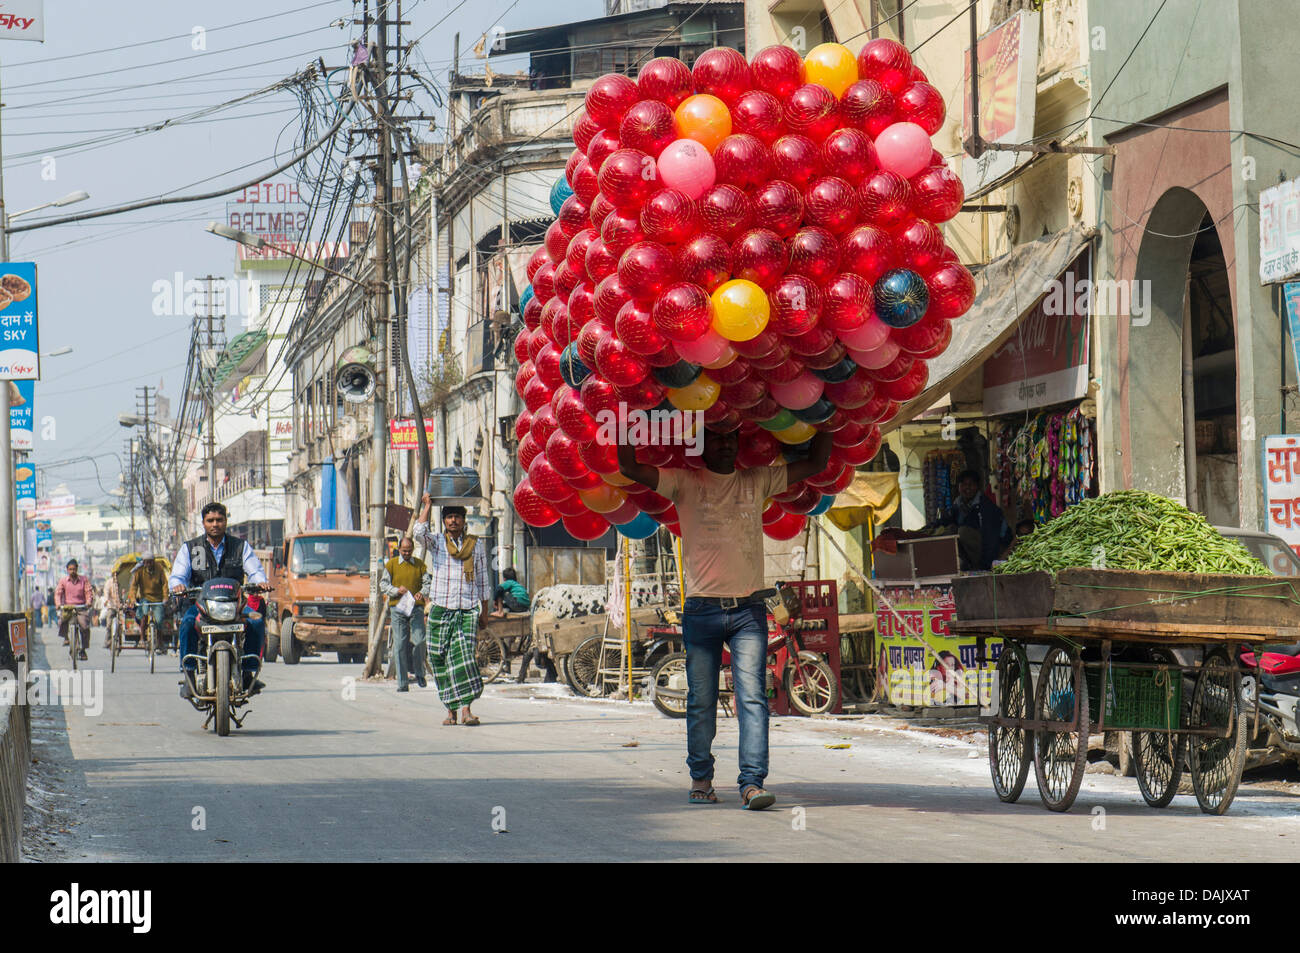 Homme portant un énorme paquet de balles jouet rouge le long d'une rue Banque D'Images